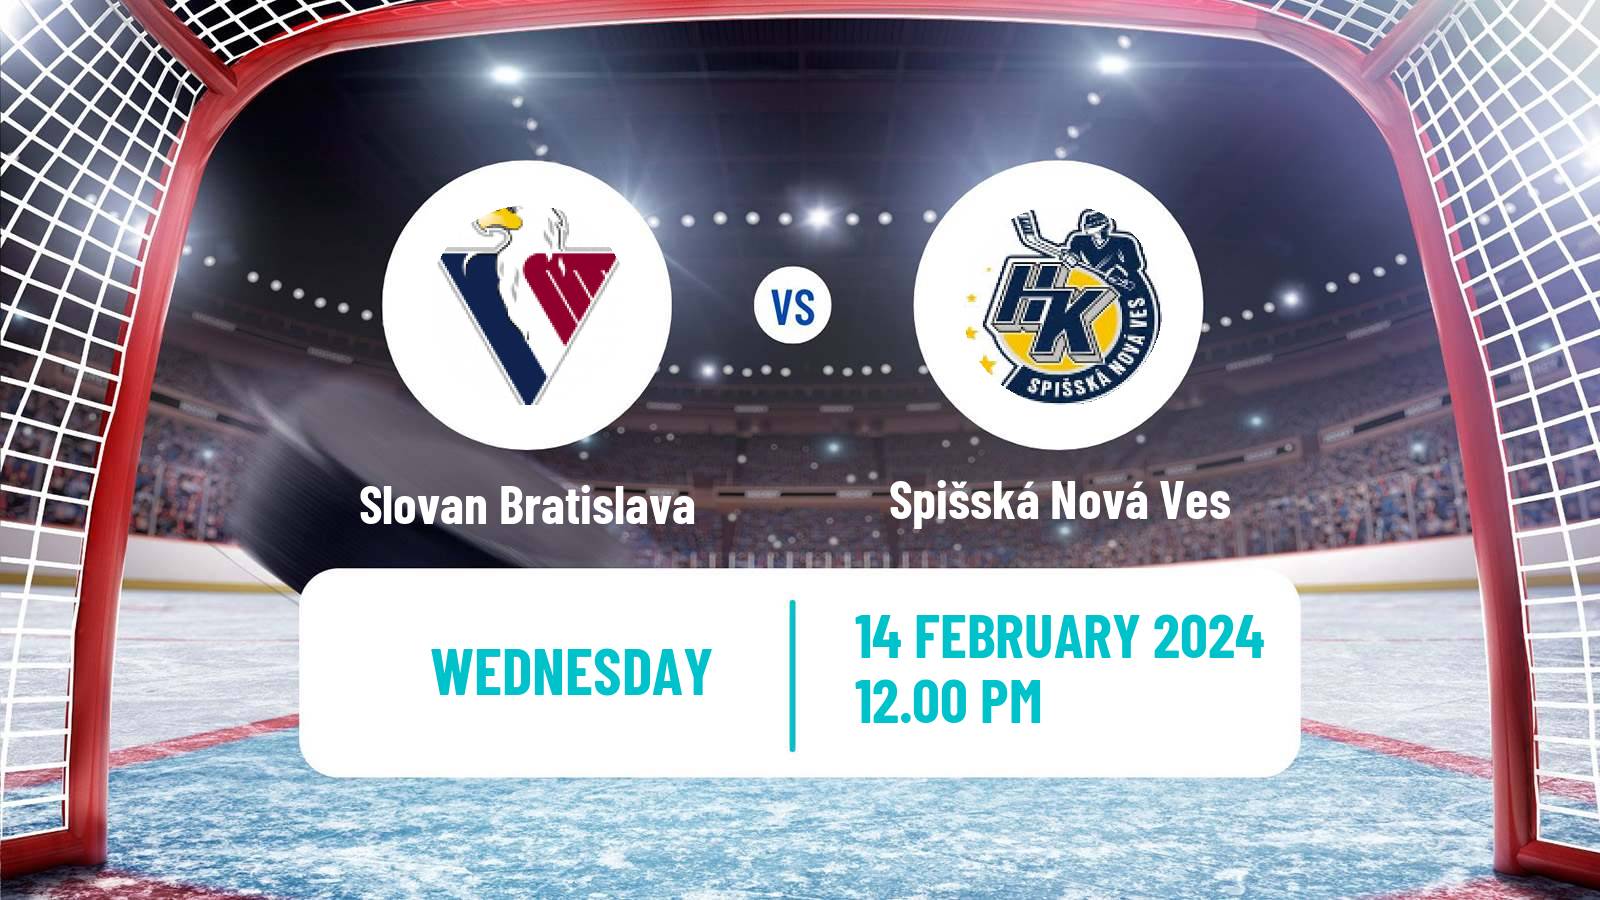 Hockey Slovak Extraliga Slovan Bratislava - Spišská Nová Ves